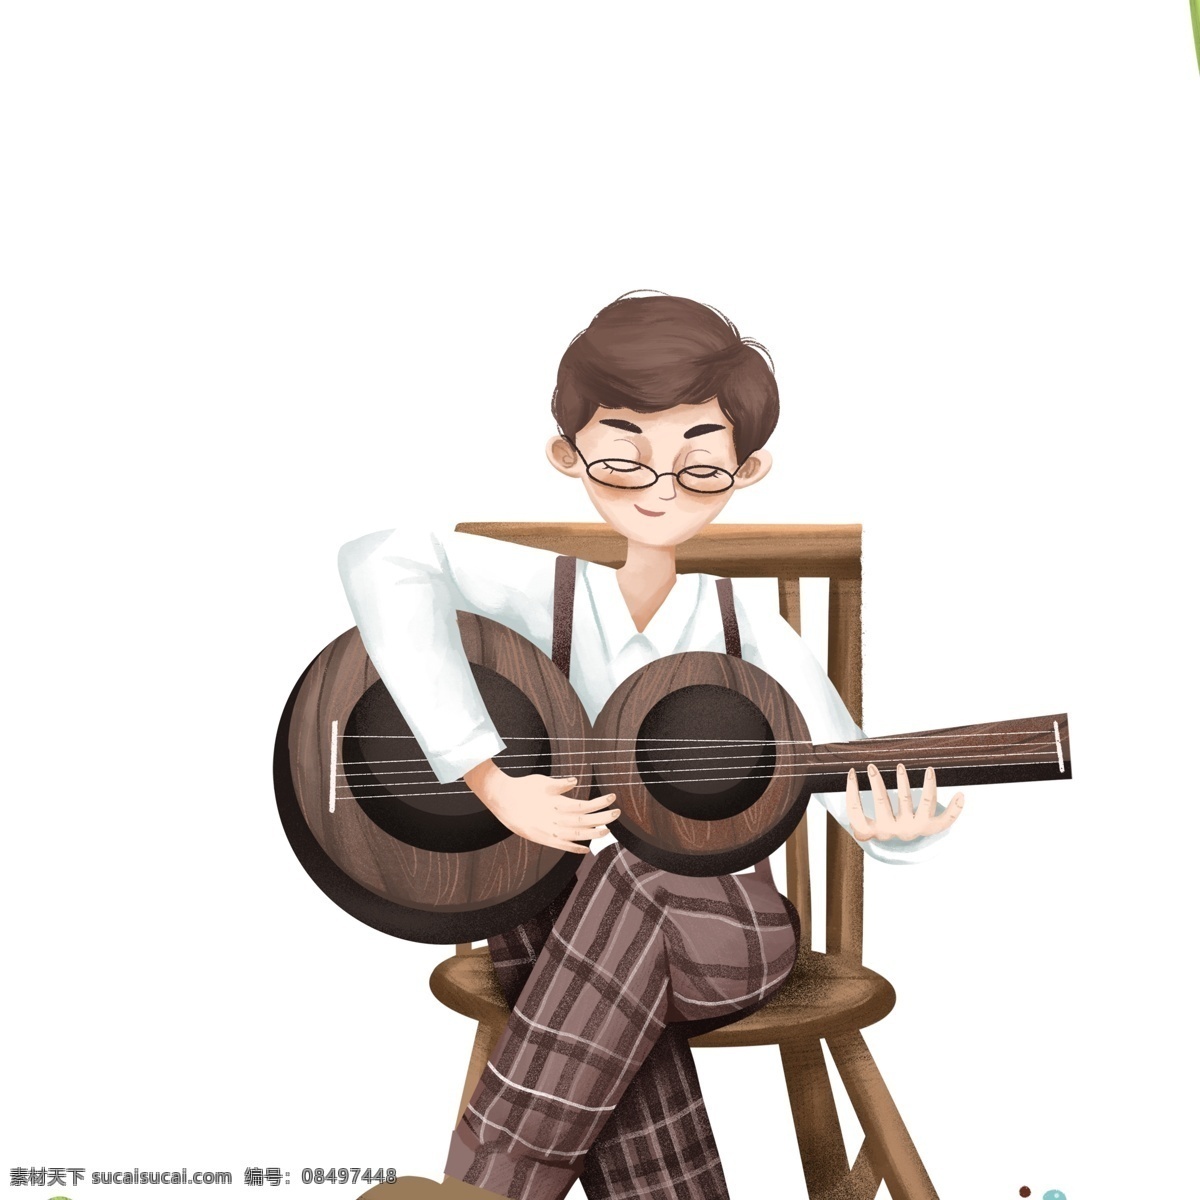 弹 吉他 的卡 通 男孩 图案 元素 人物 卡通人物 吉他手 乐器 简约 创意元素 免抠元素 椅子